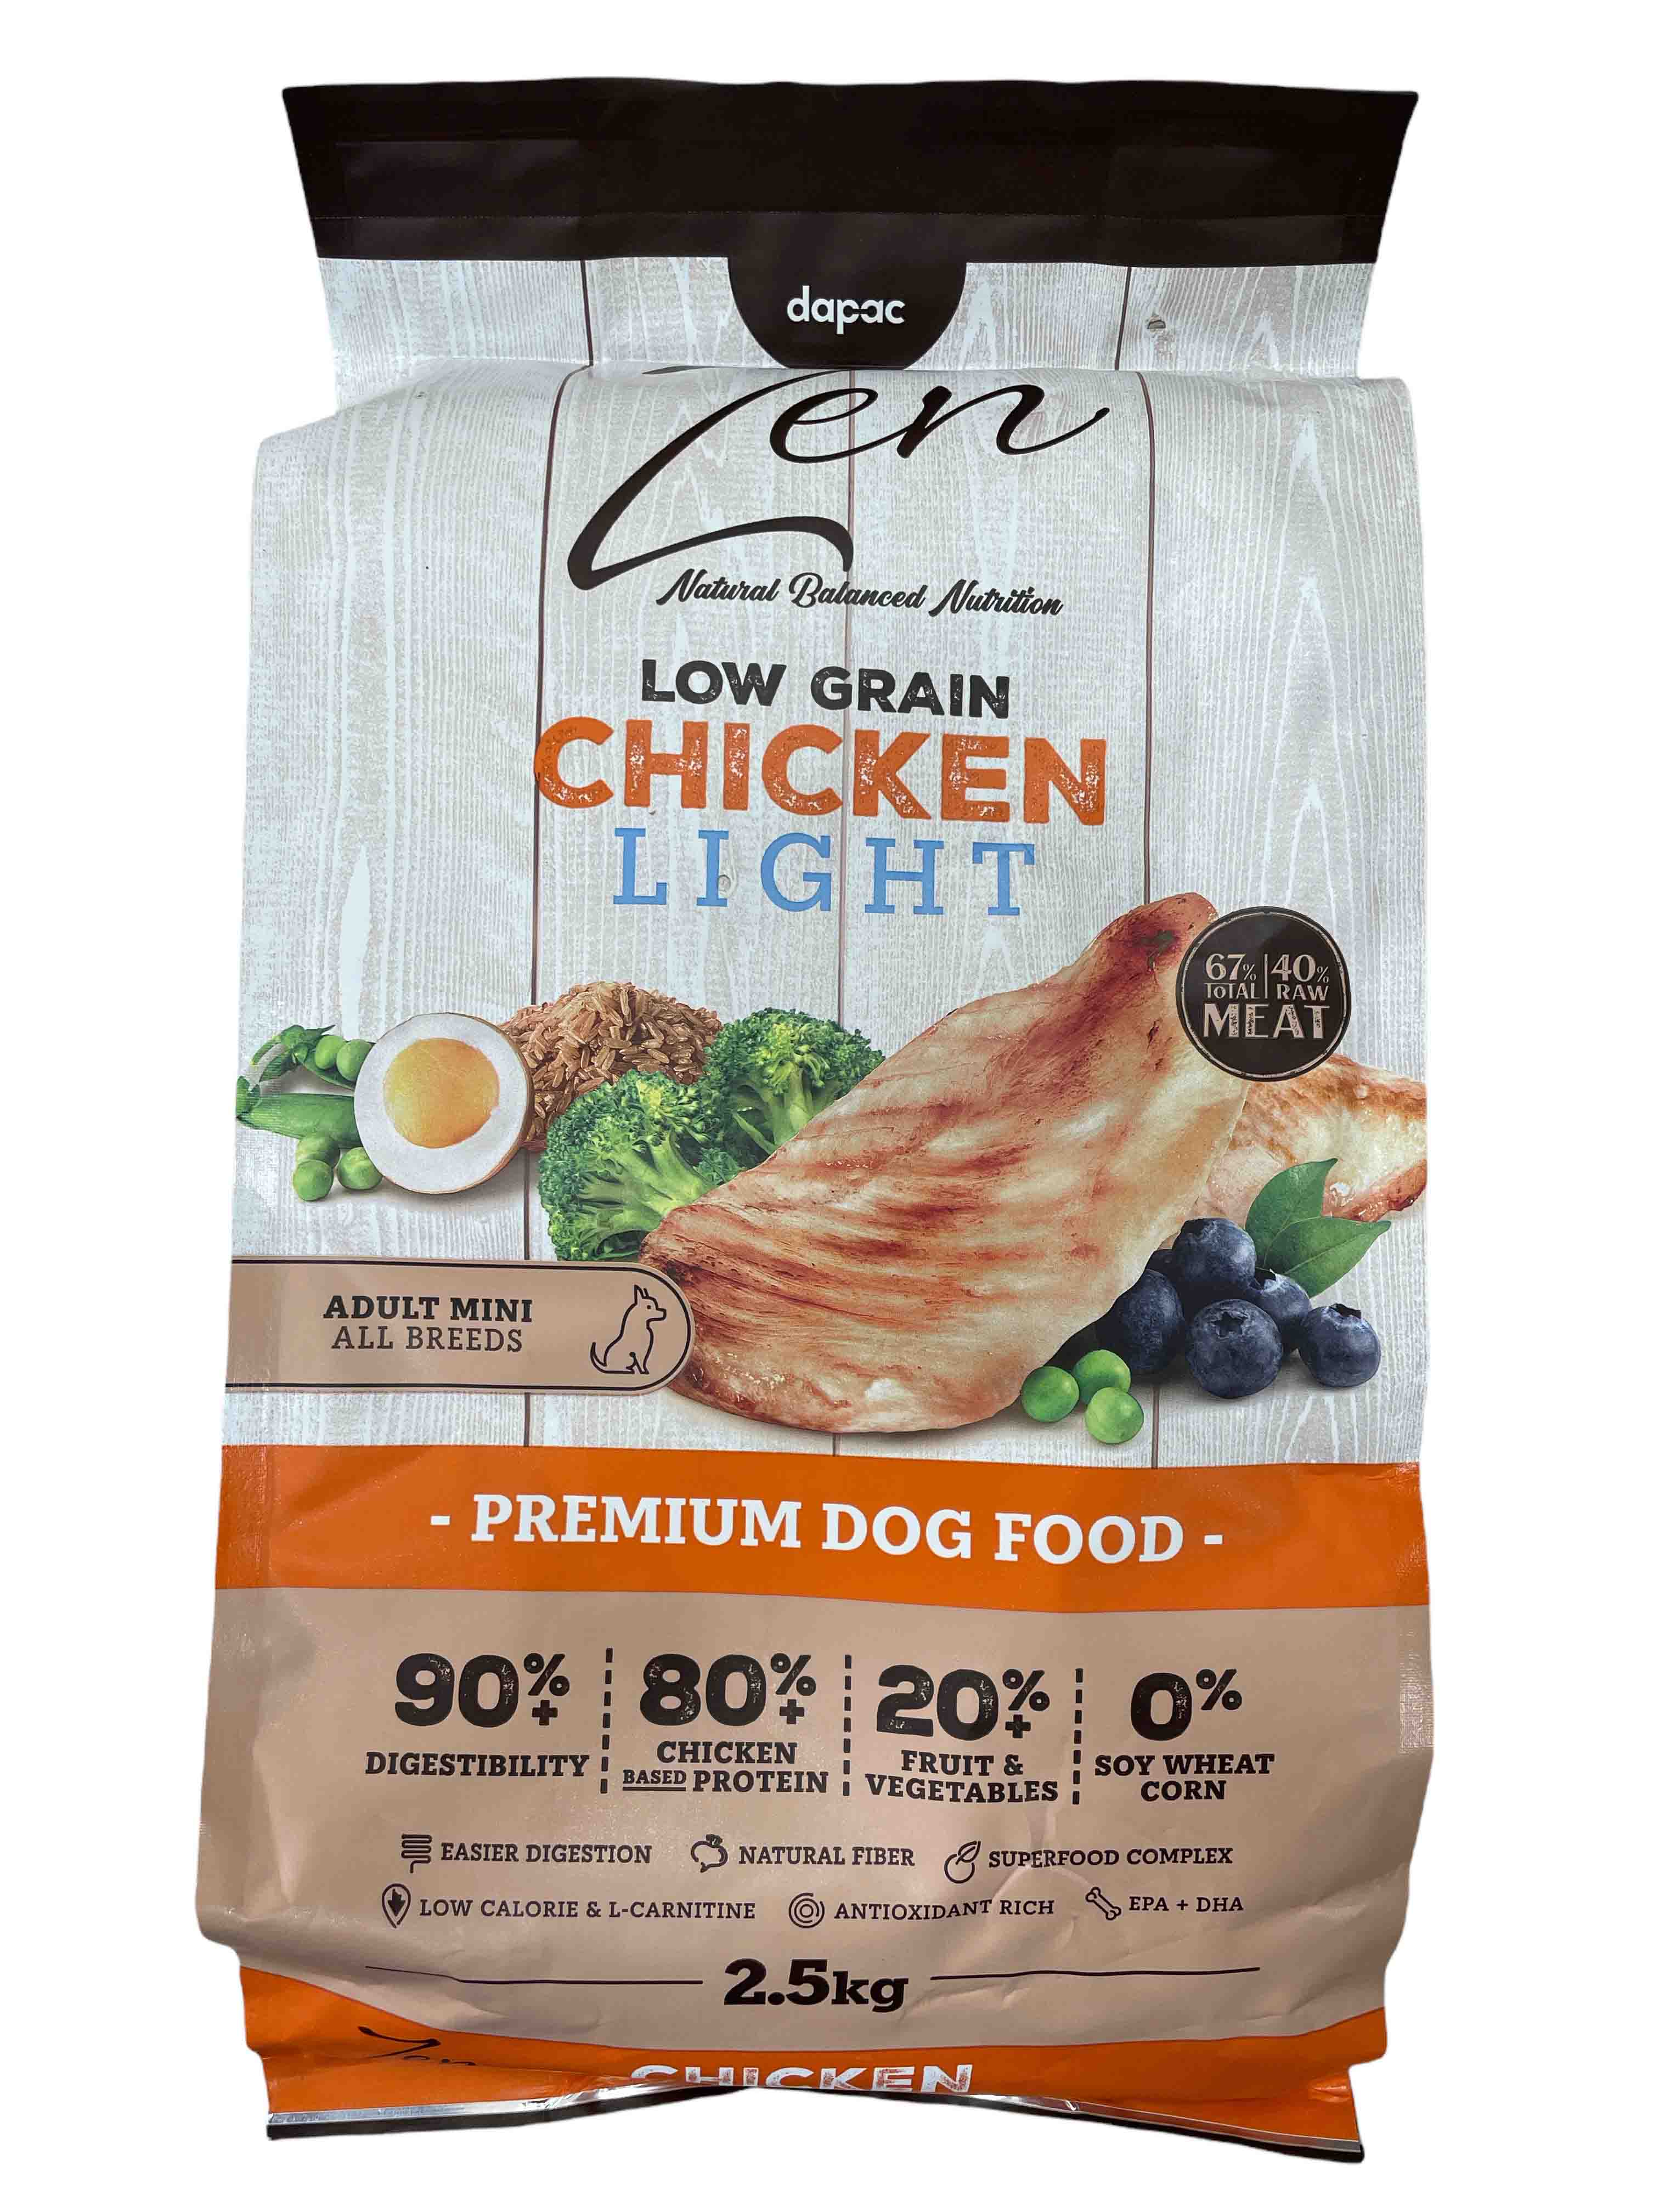 El nuevo pienso para perros Zen Low Grain apuesta por la calidad de sus ingredientes